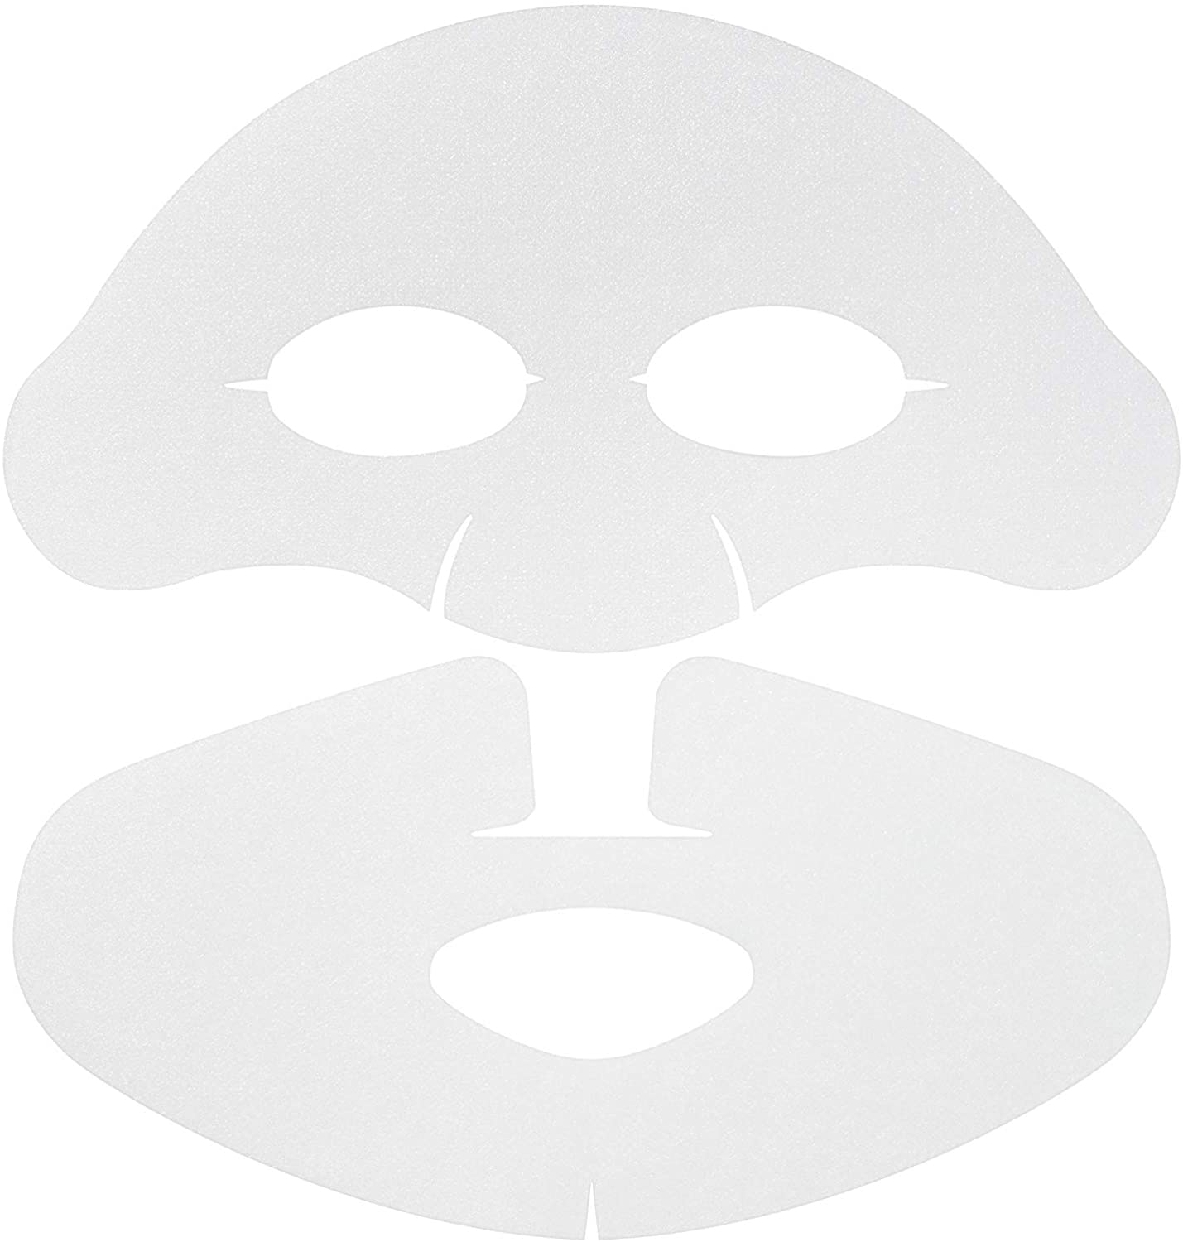 est(エスト) ザ ローション マスクの商品画像5 